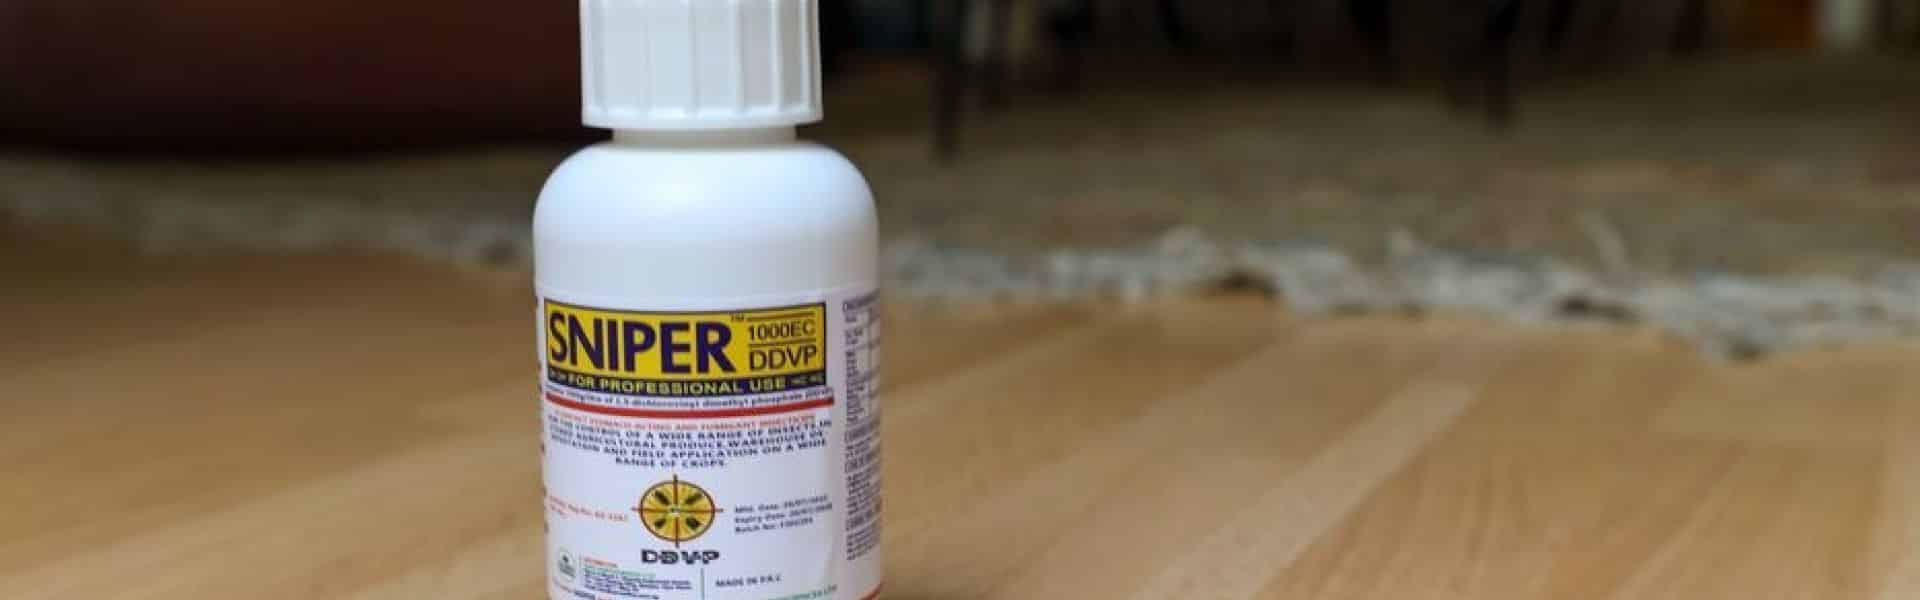 Insecticide Sniper 1000 : les risques d’un produit interdit contre la punaise de lit